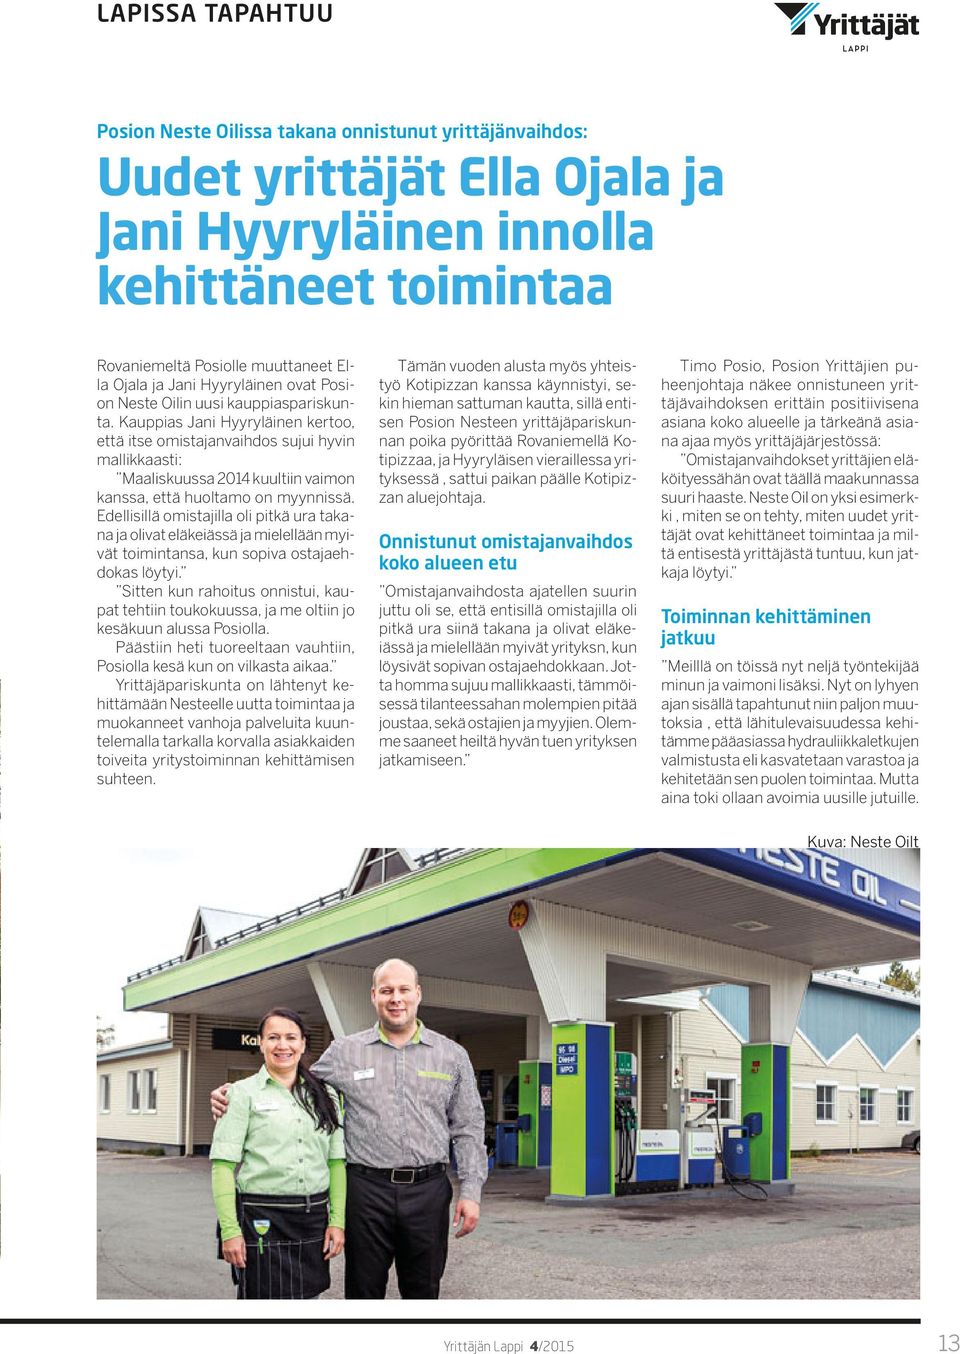 Kauppias Jani Hyyryläinen kertoo, että itse omistajanvaihdos sujui hyvin mallikkaasti: Maaliskuussa 2014 kuultiin vaimon kanssa, että huoltamo on myynnissä.